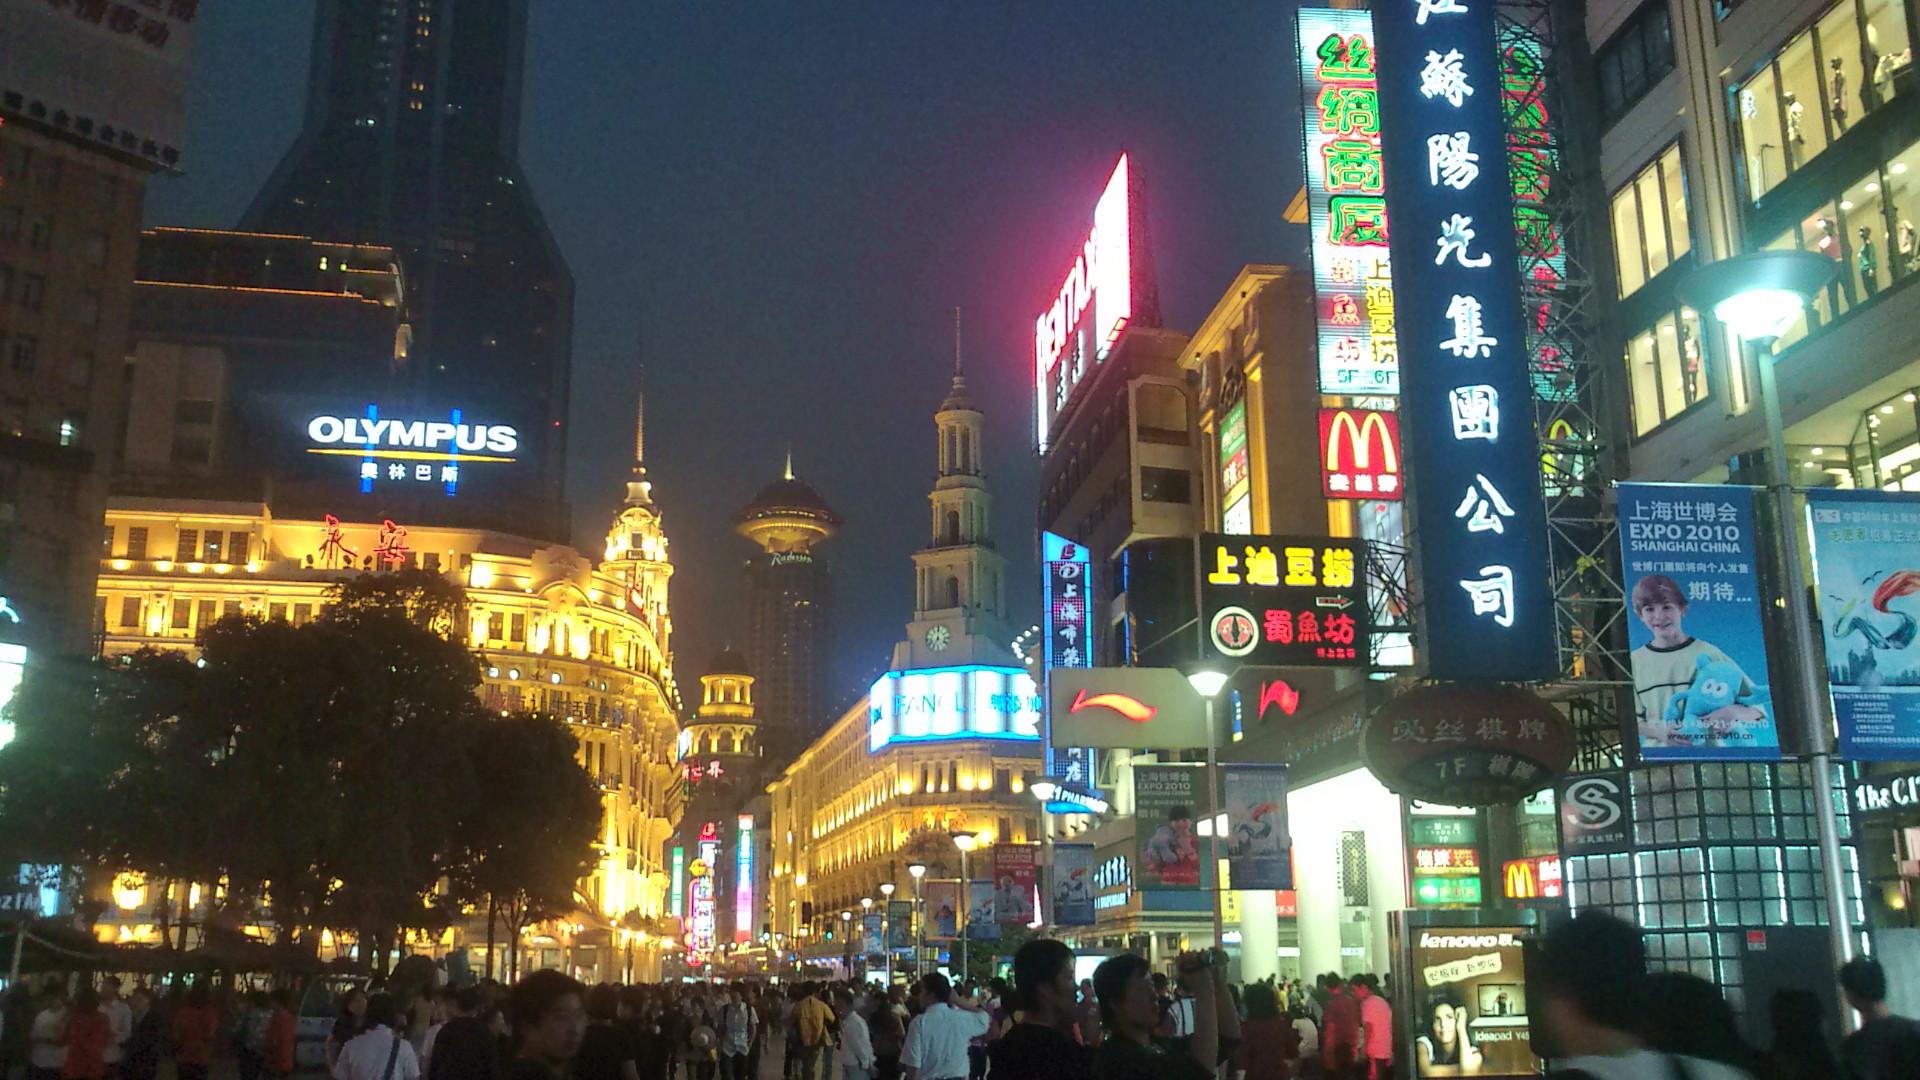 人民広場 公園は上海の中心 観光に便利なホテルの情報も Travelnote トラベルノート